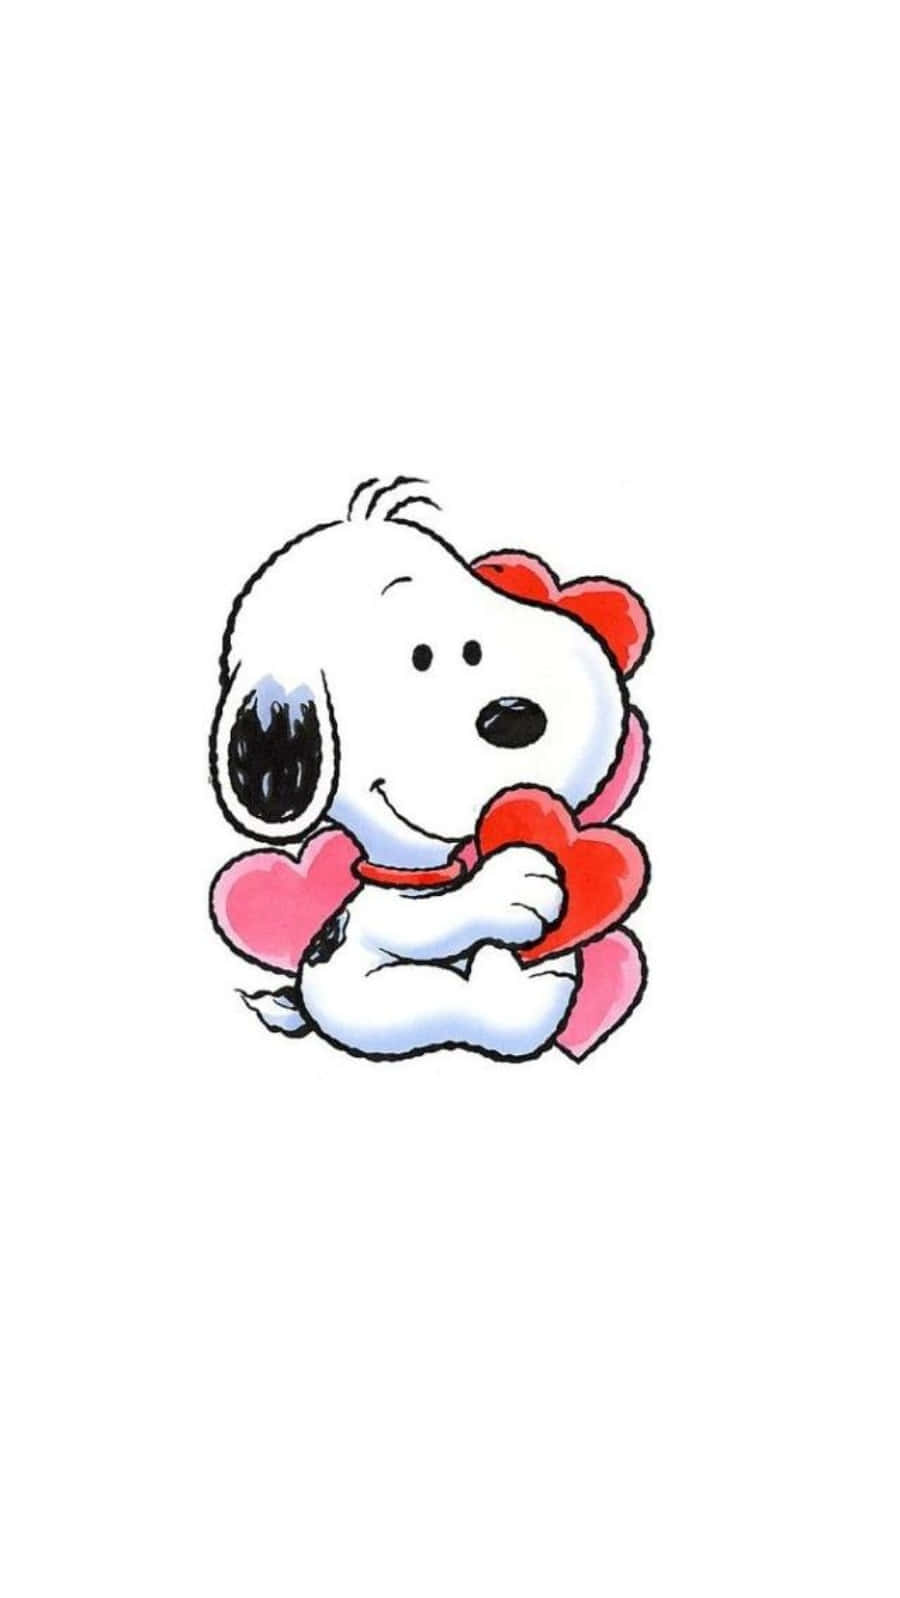 Feiernsie Den Valentinstag Mit Snoopy! Wallpaper